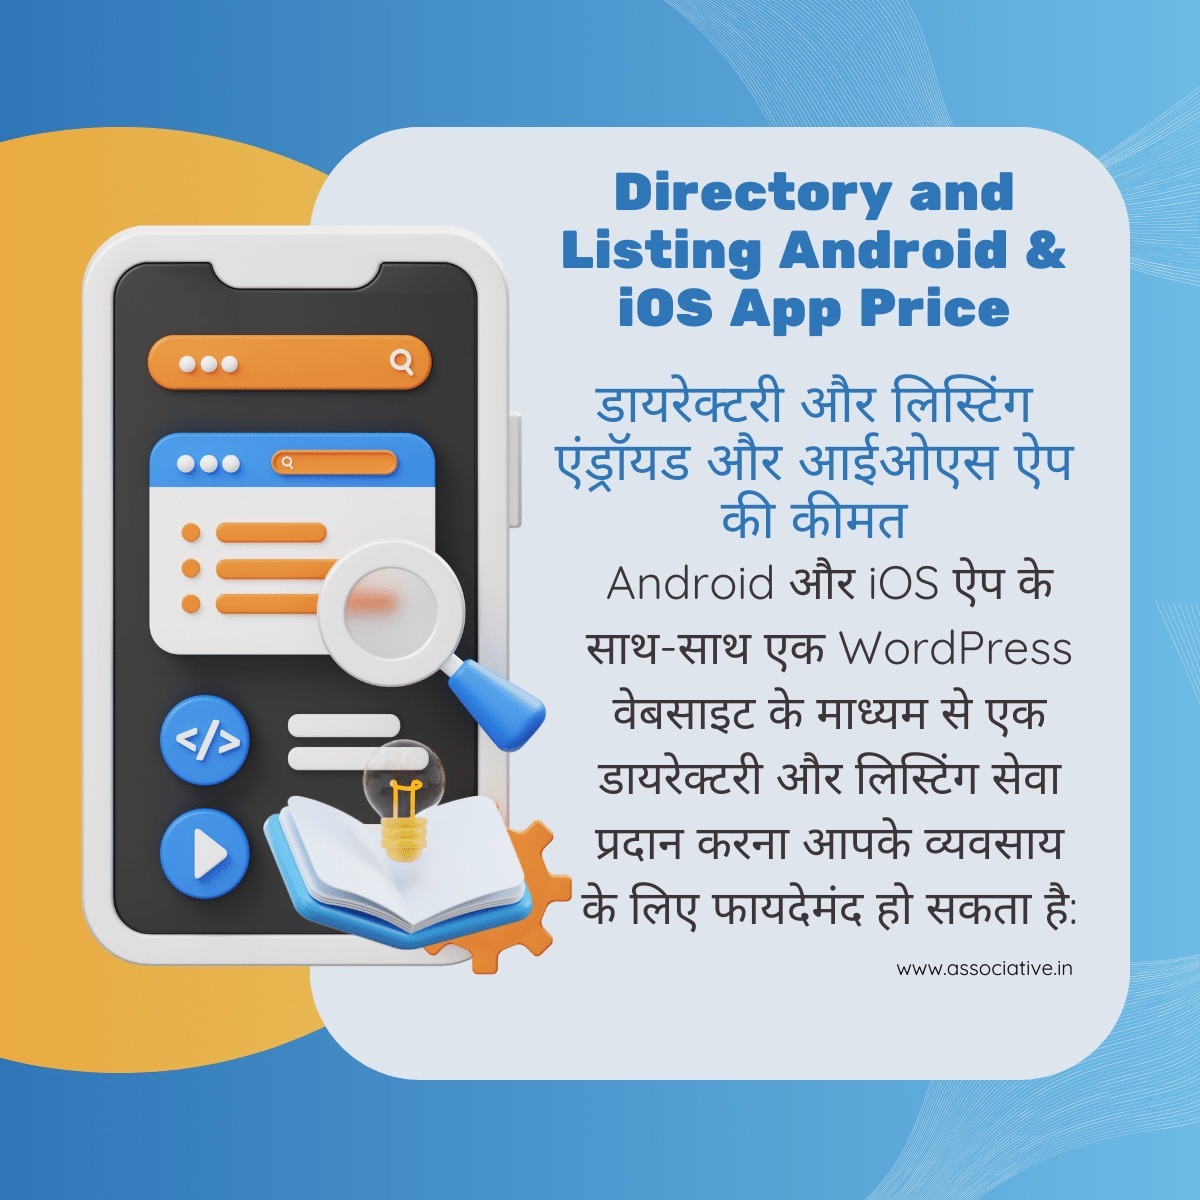 Directory and Listing Android & iOS App Price

डायरेक्टरी और लिस्टिंग Android और iOS ऐप की कीमत